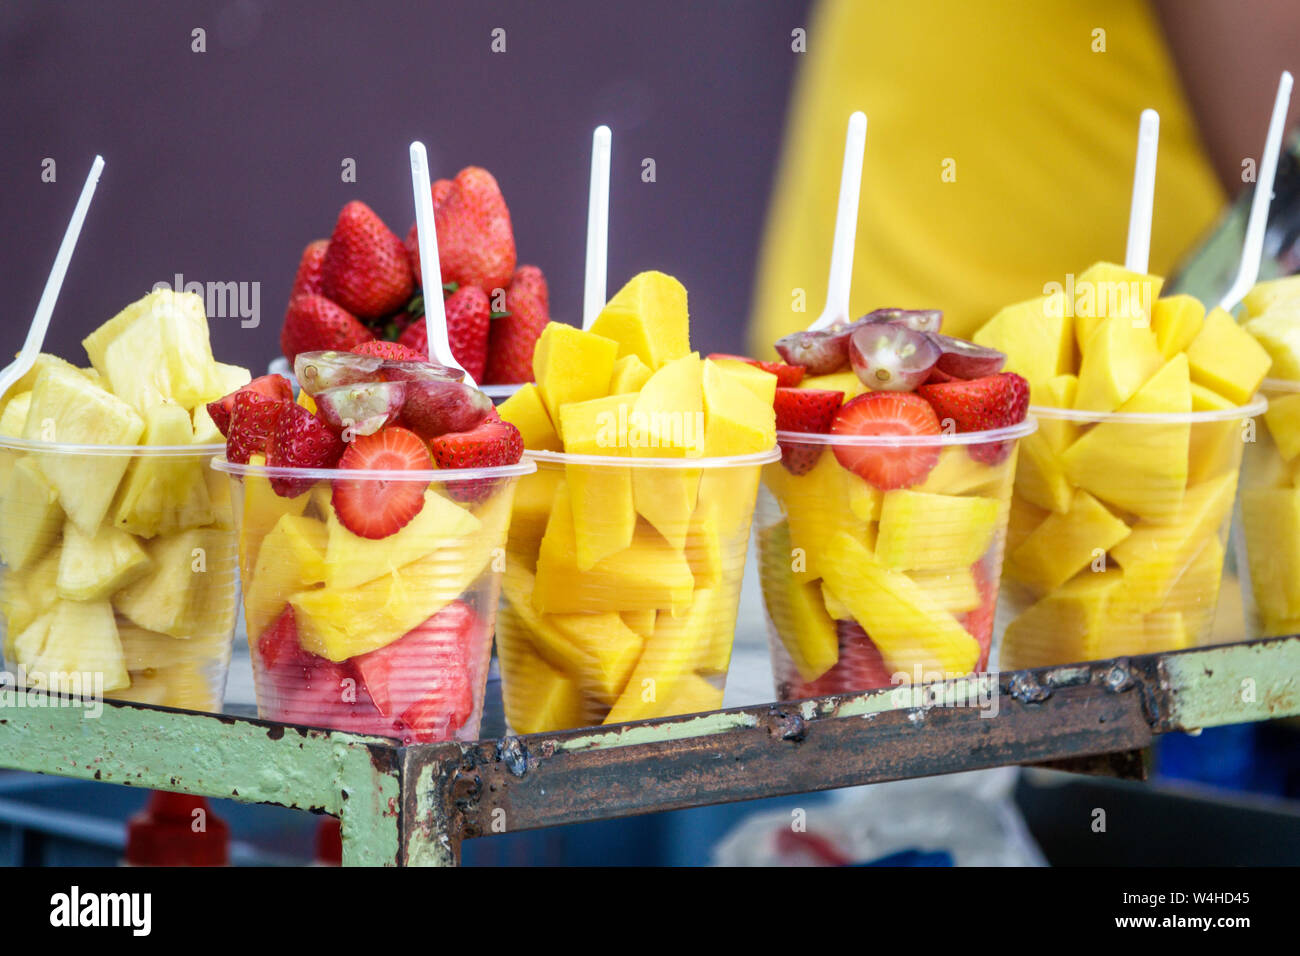 Colombia Cartagena Old amurallada Centro de la Ciudad de la calle vendedor de alimentos tazas de fruta mango fresa piña tazas de plástico mostrar productos de venta p Foto de stock